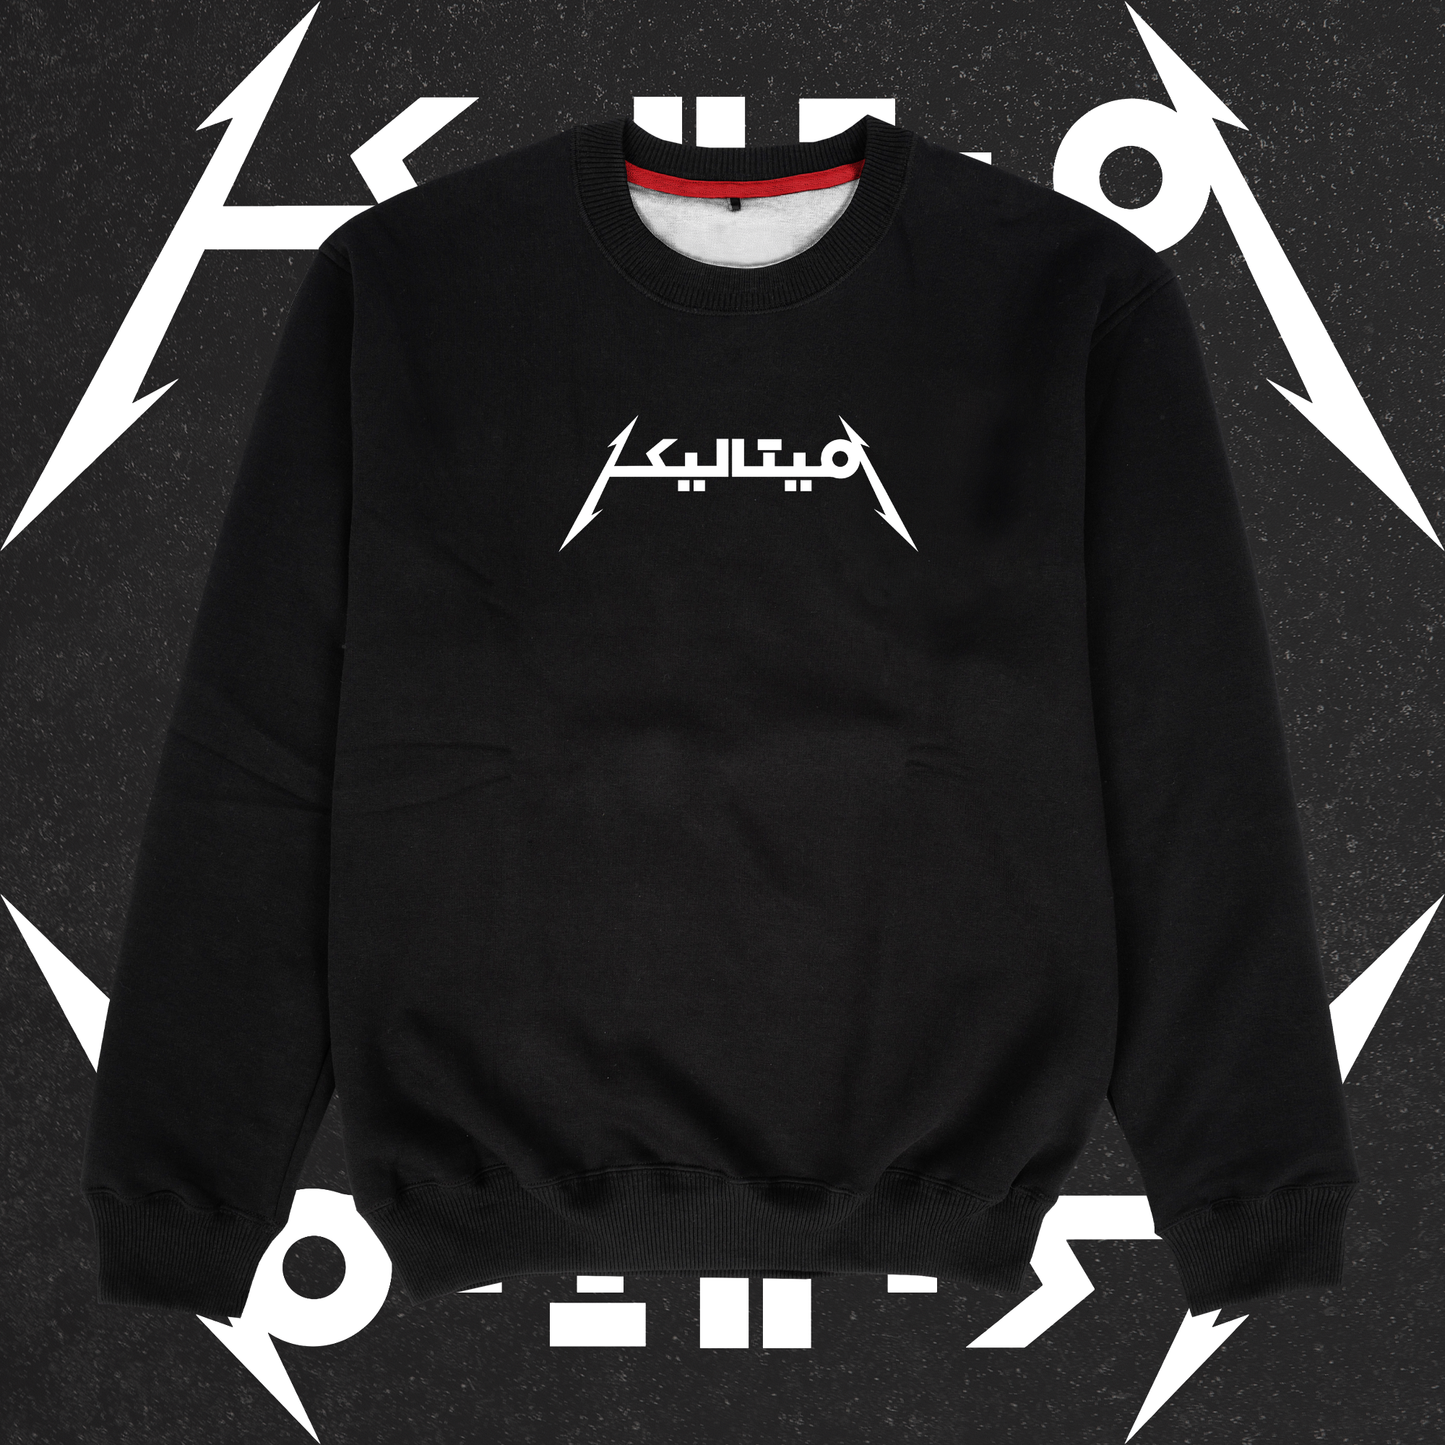 Urdu Metallica Sweatshirt